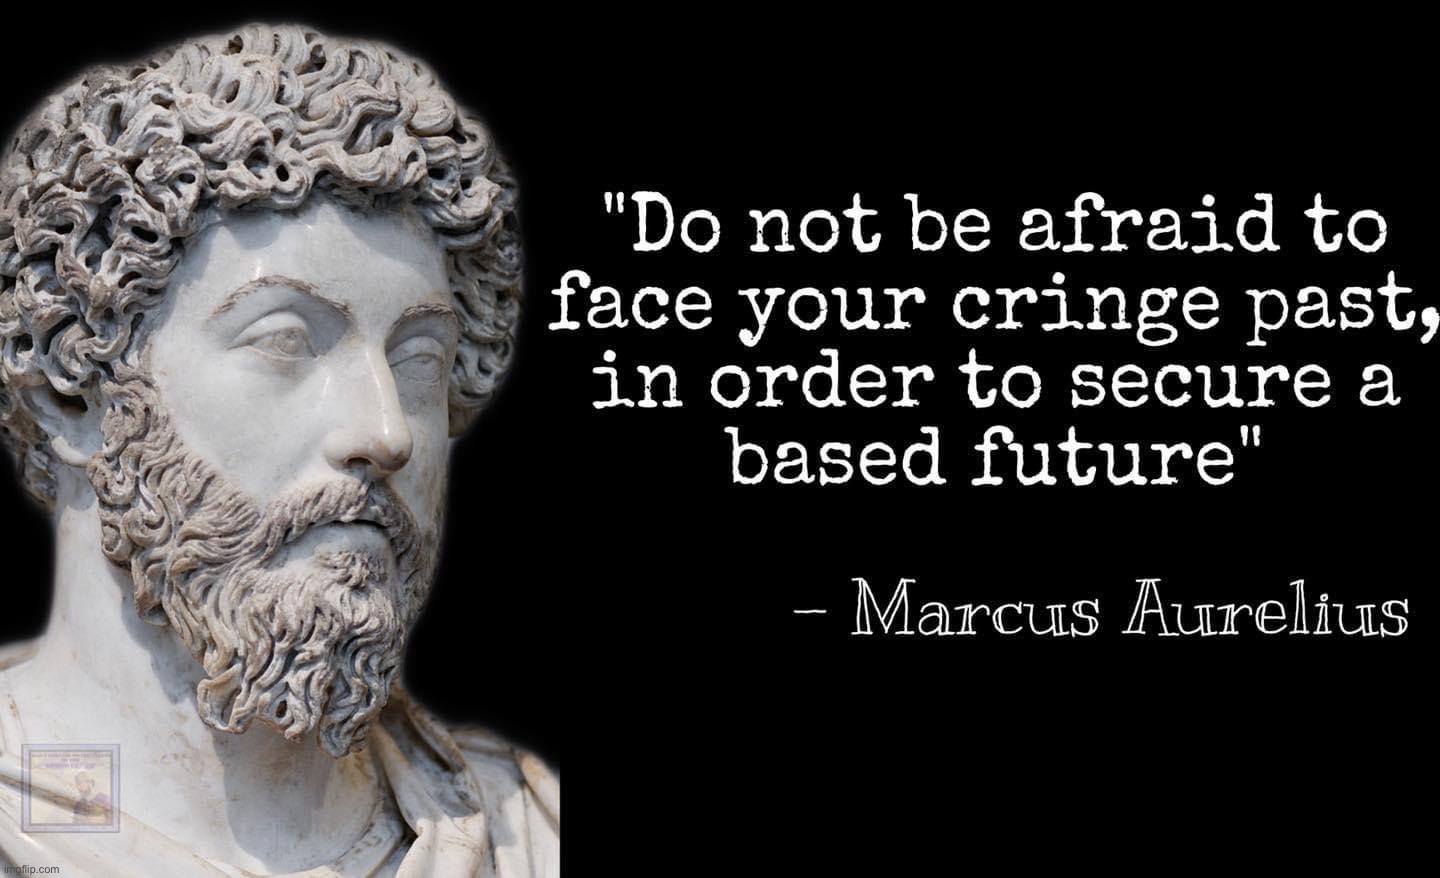 Marcus Aurelius satirical quote | image tagged in marcus aurelius quote | made w/ Imgflip meme maker